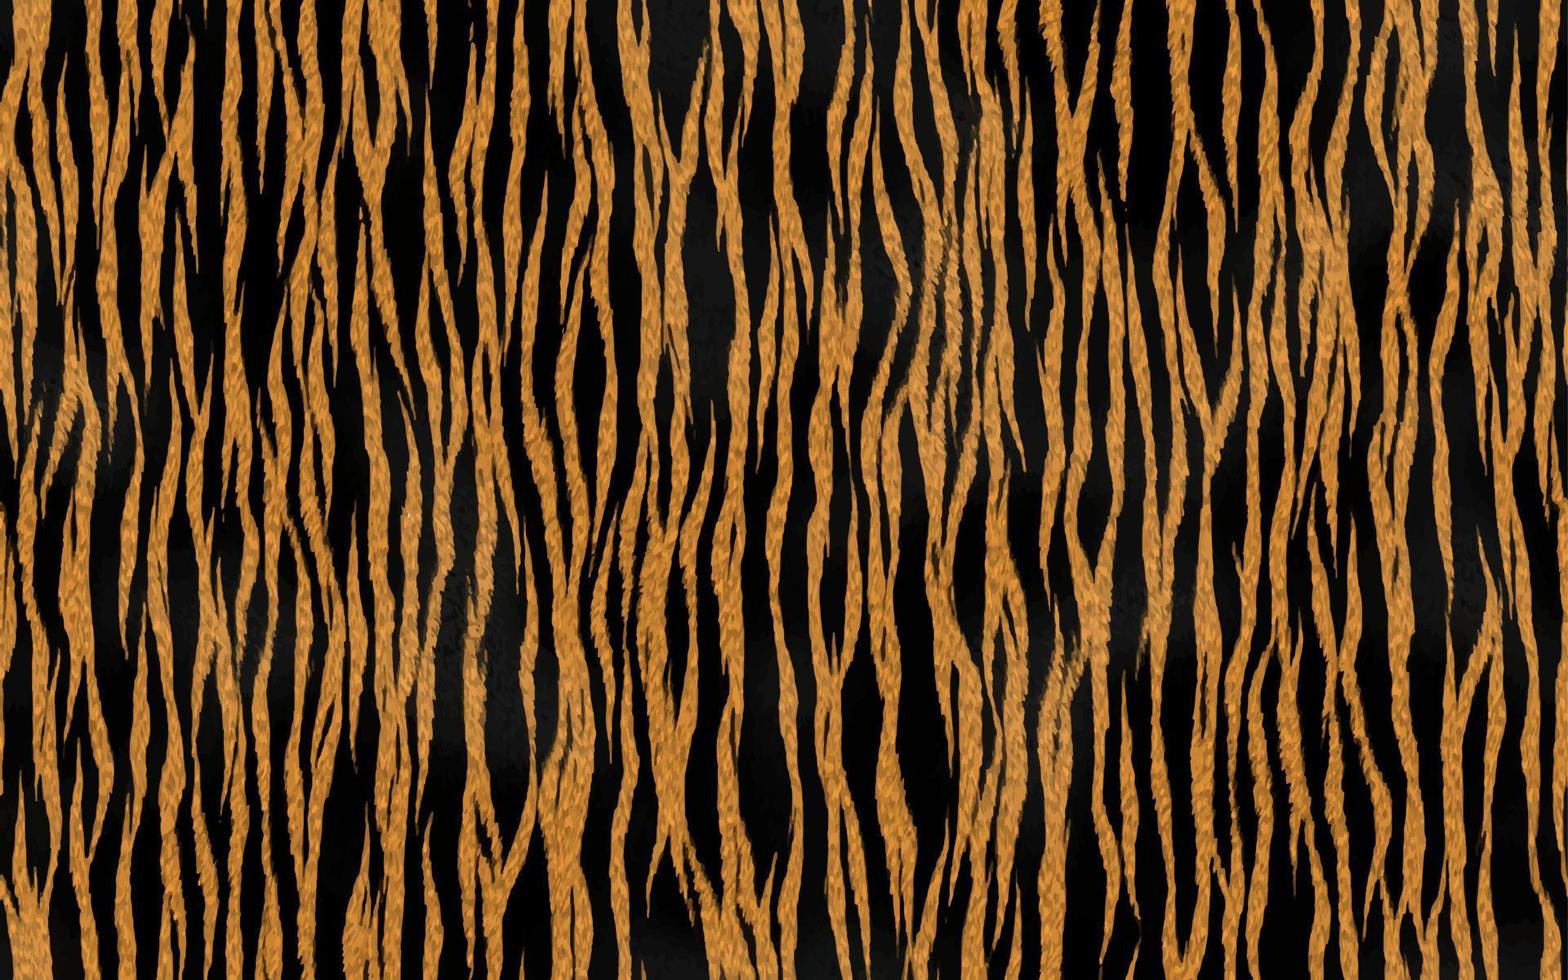 kamouflage tiger sömlös mönster textur gul bakgrund och svart Ränder hårig elegant skriva ut vektor